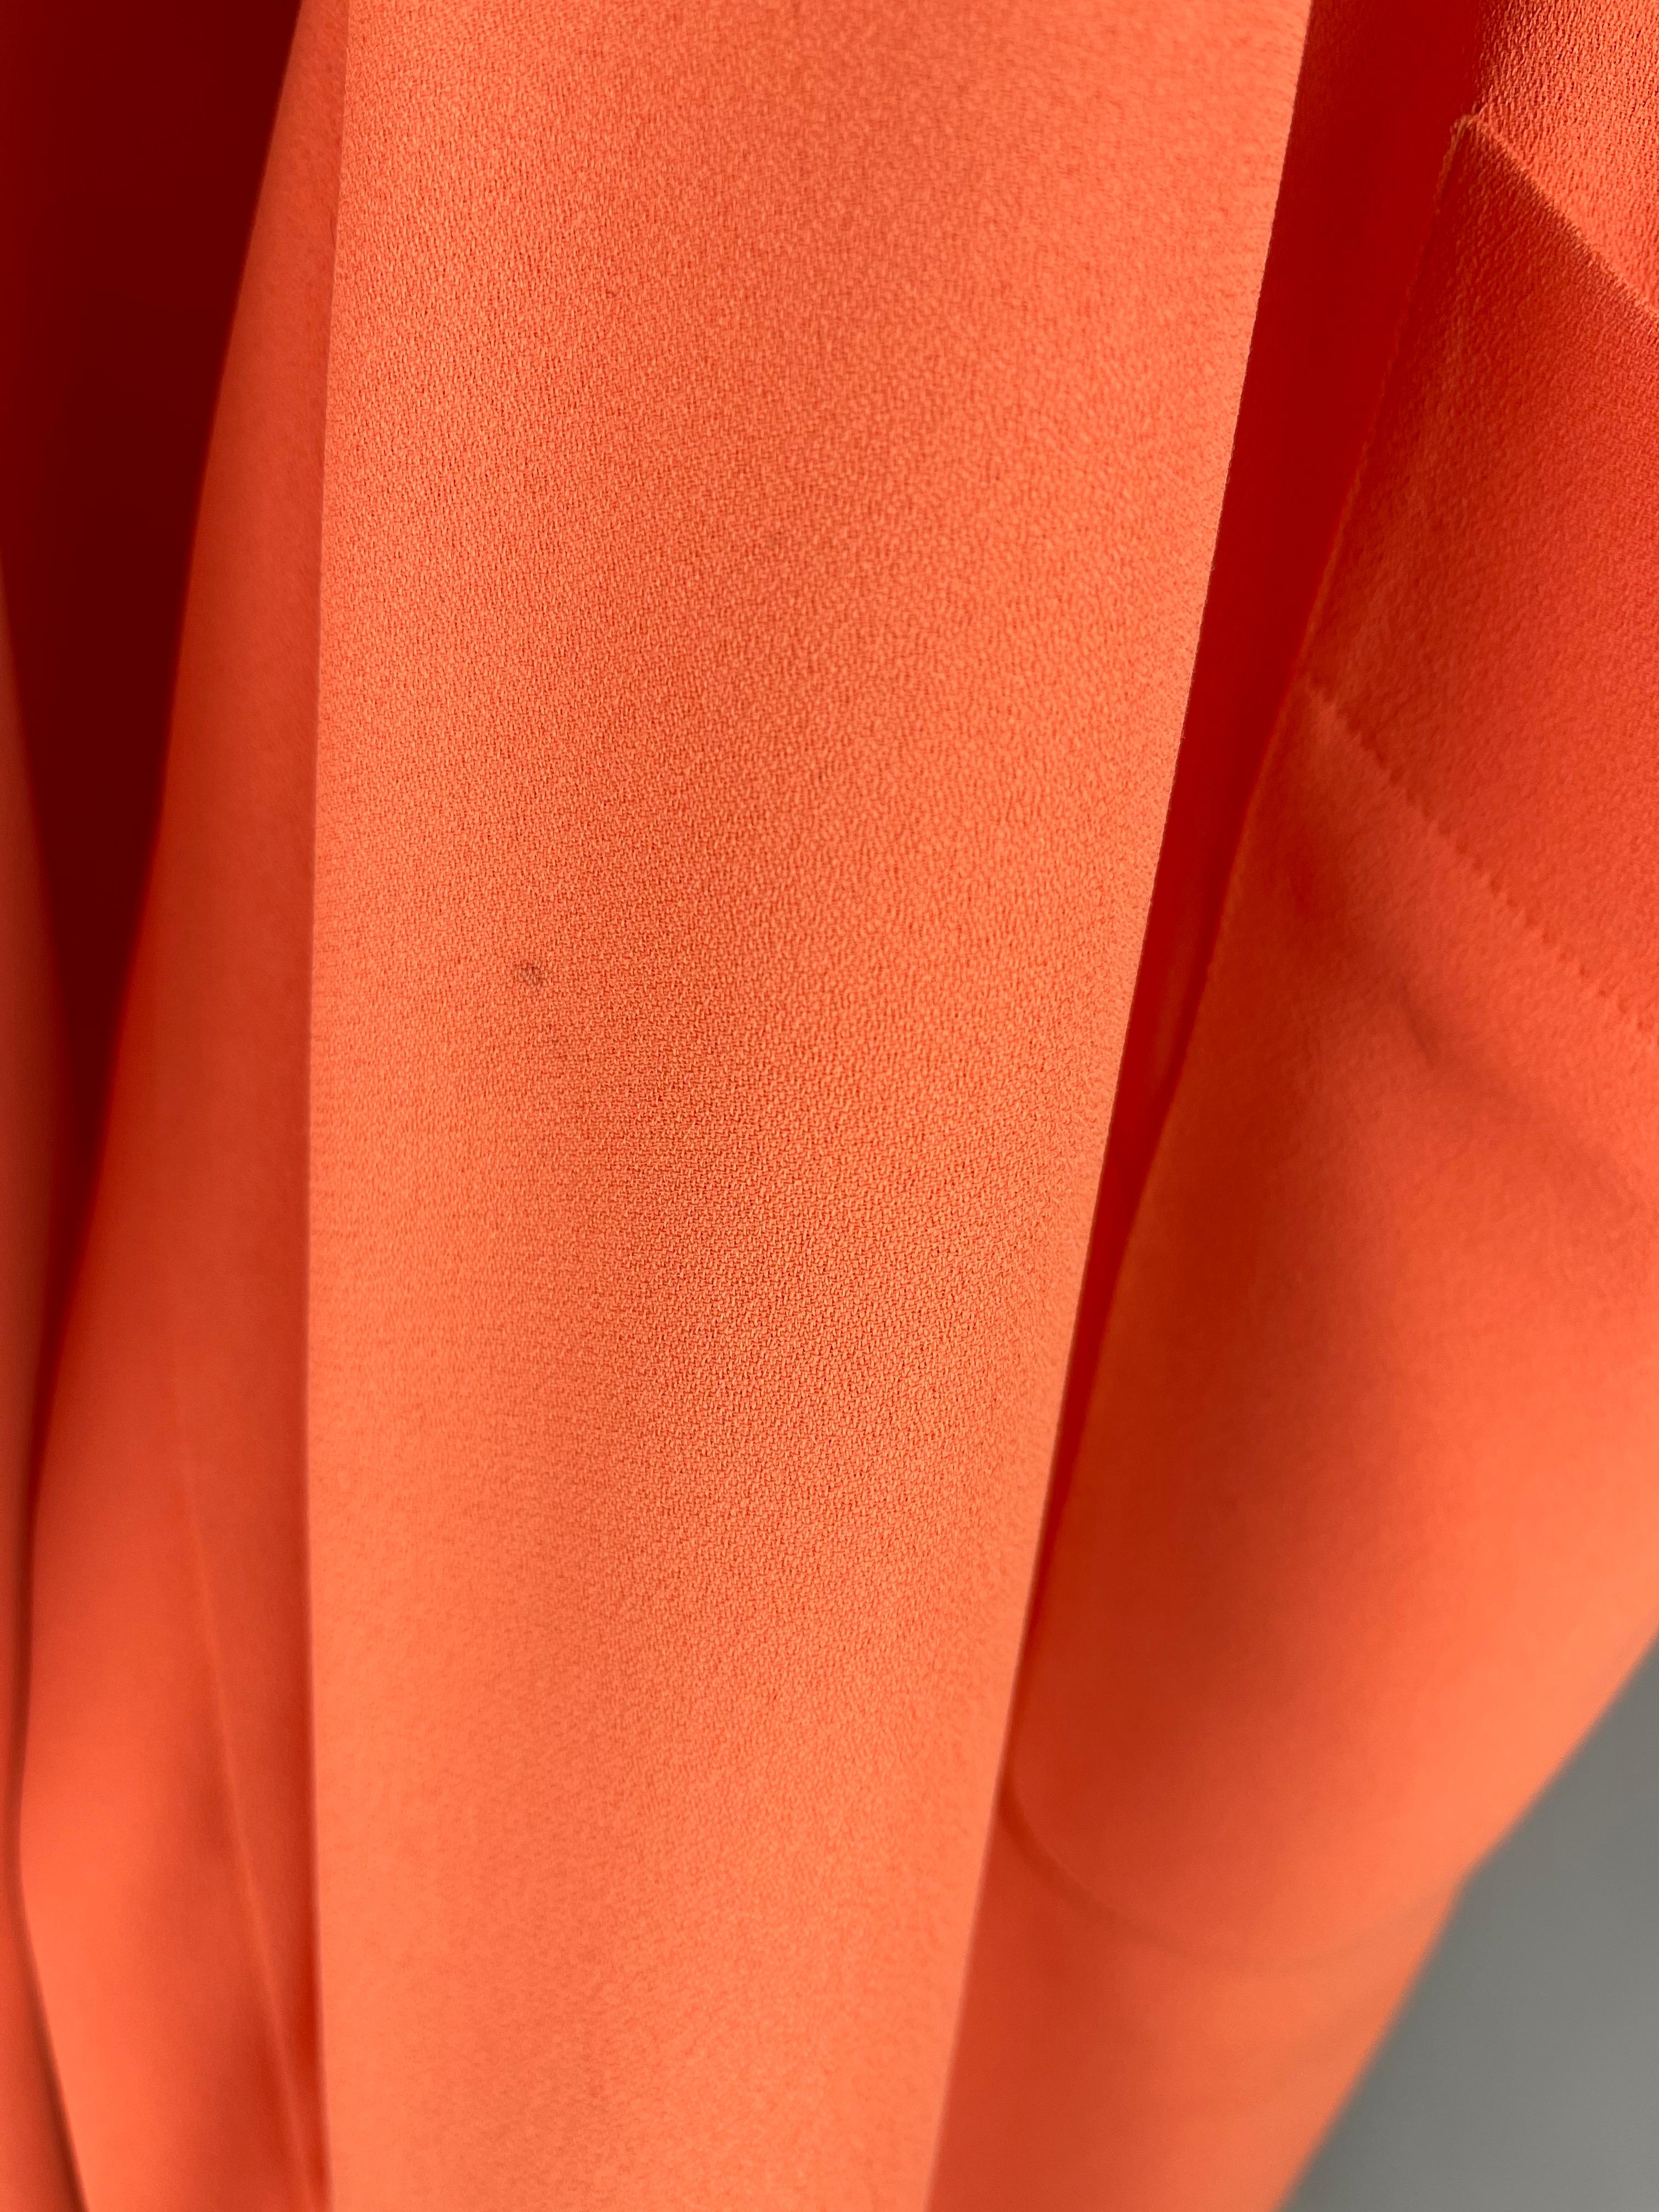 Thierry Mugler Orange Dress Metallic Fringes Large 4